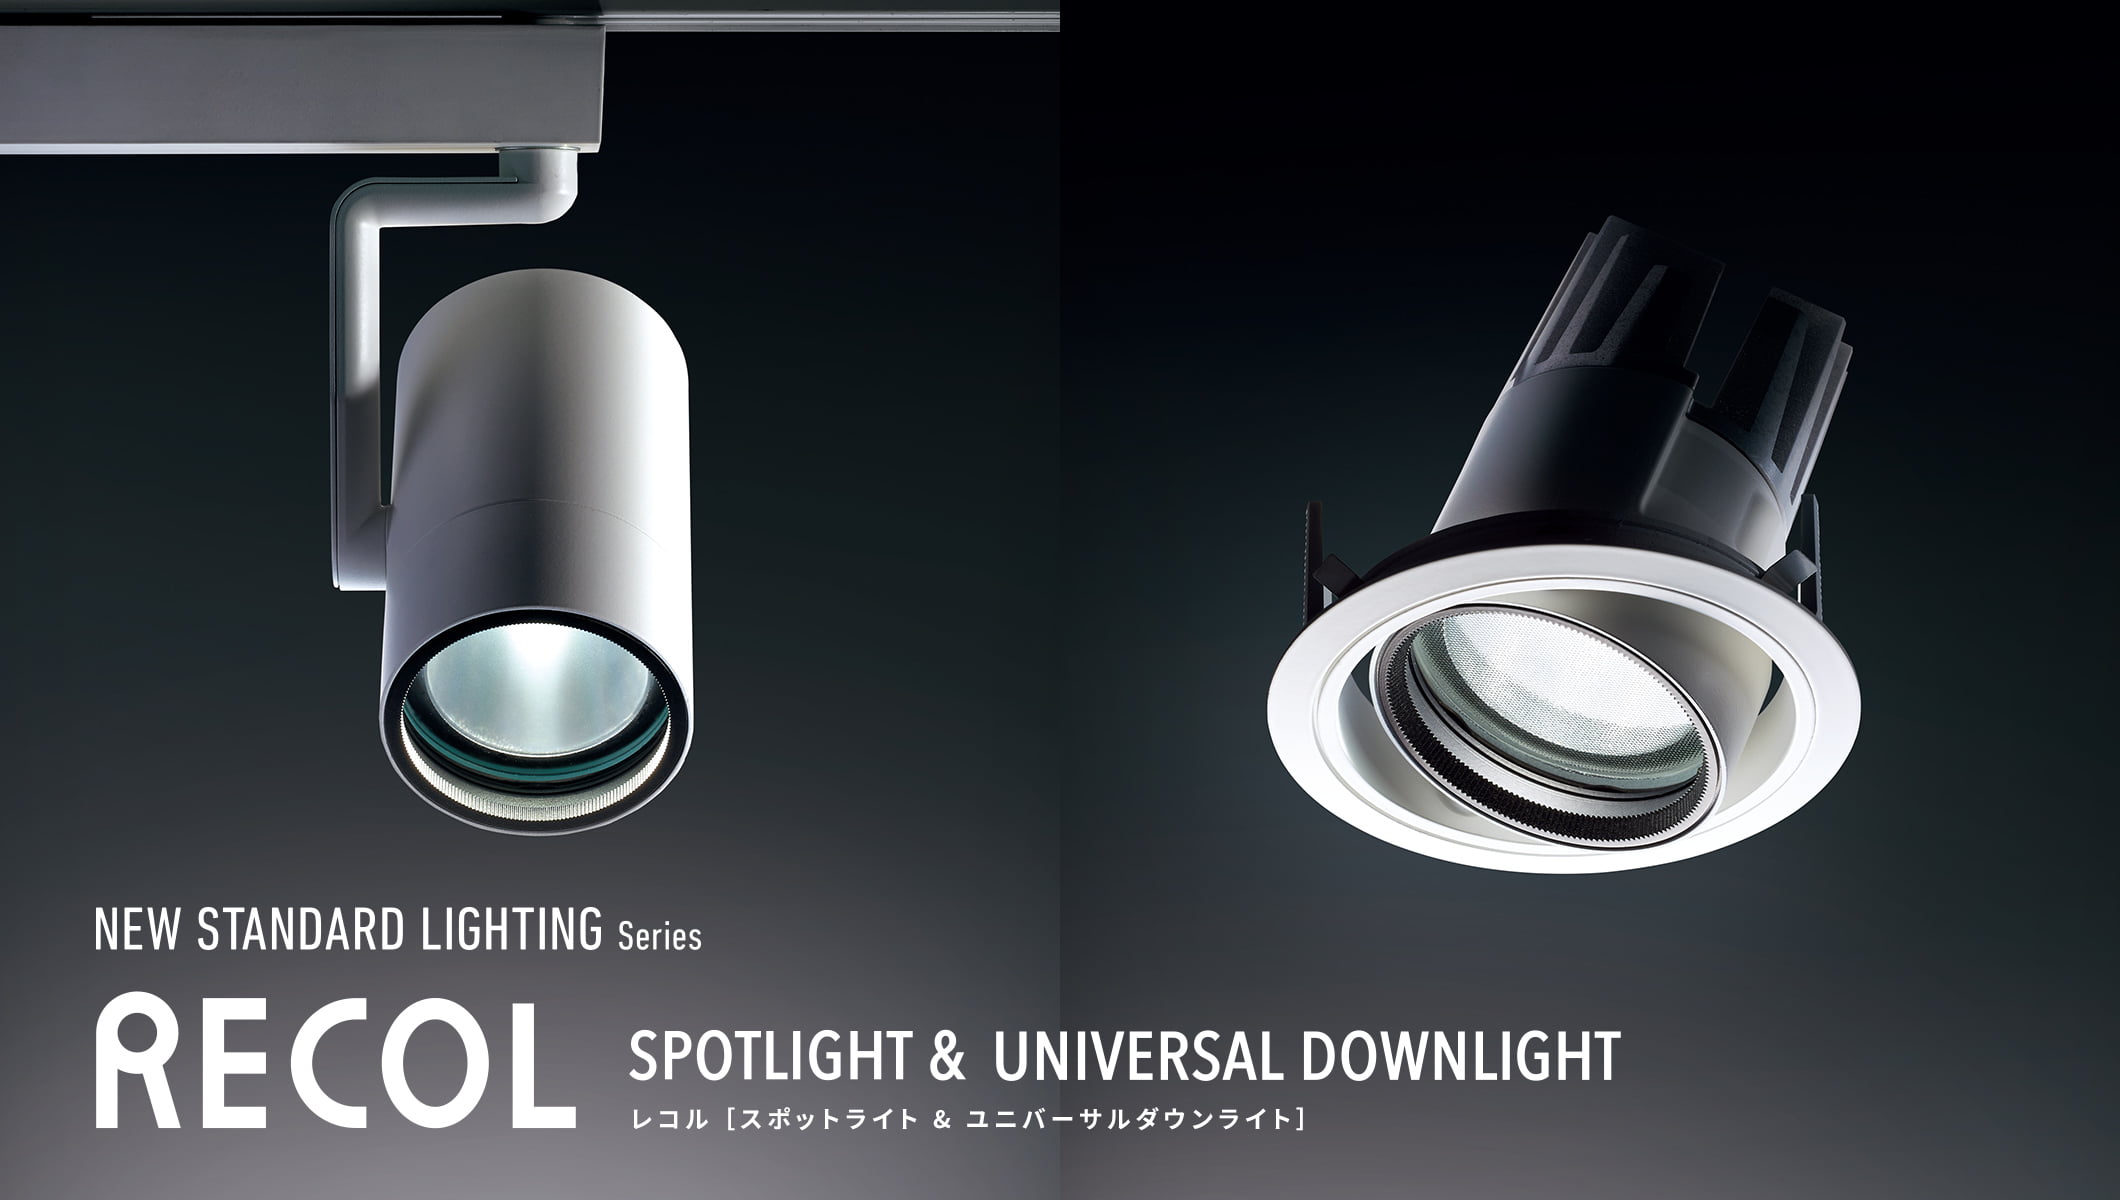 New Standard Lighting Series RECOL レコル［スポットライト & ユニバーサルダウンライト］